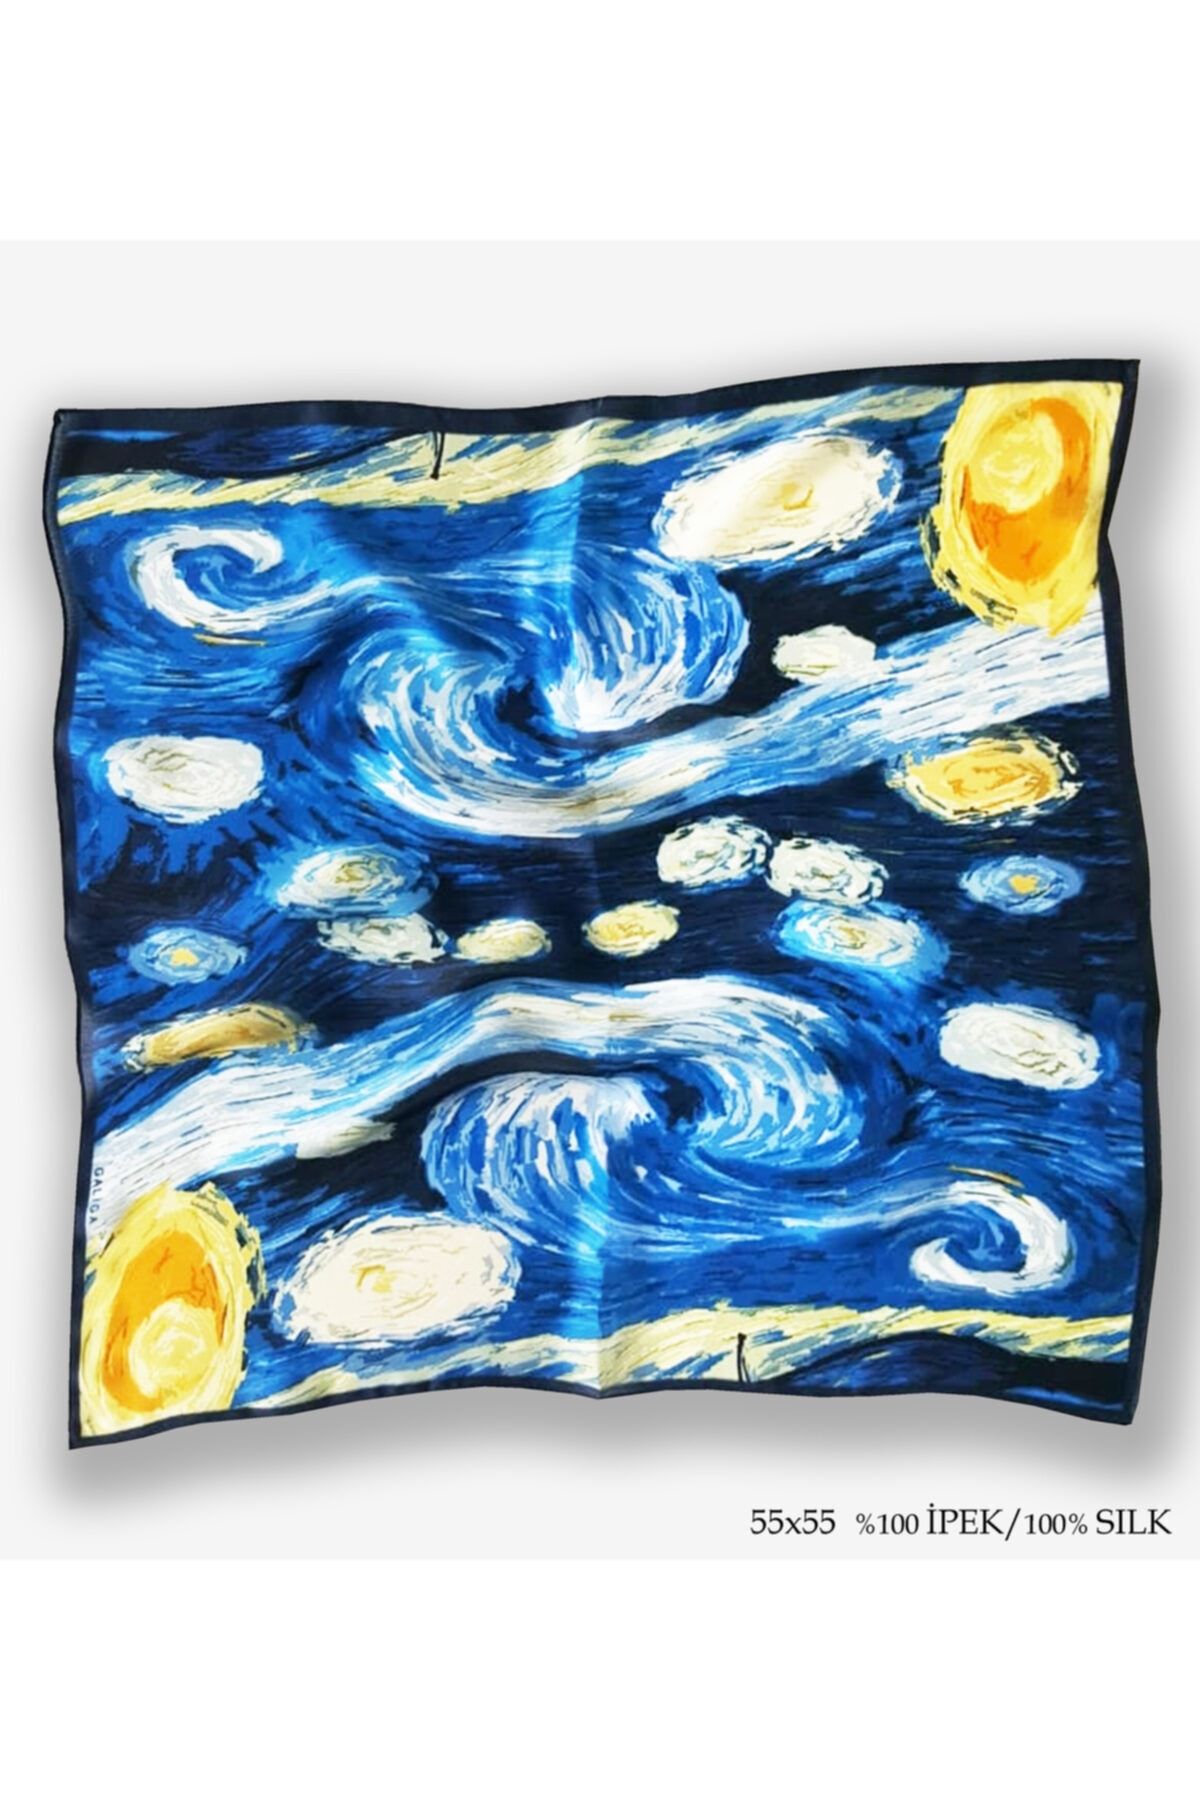 Galiga Van Gogh-starry Nıght %100 Ipek Fular 55x55cm 'art On Silk'